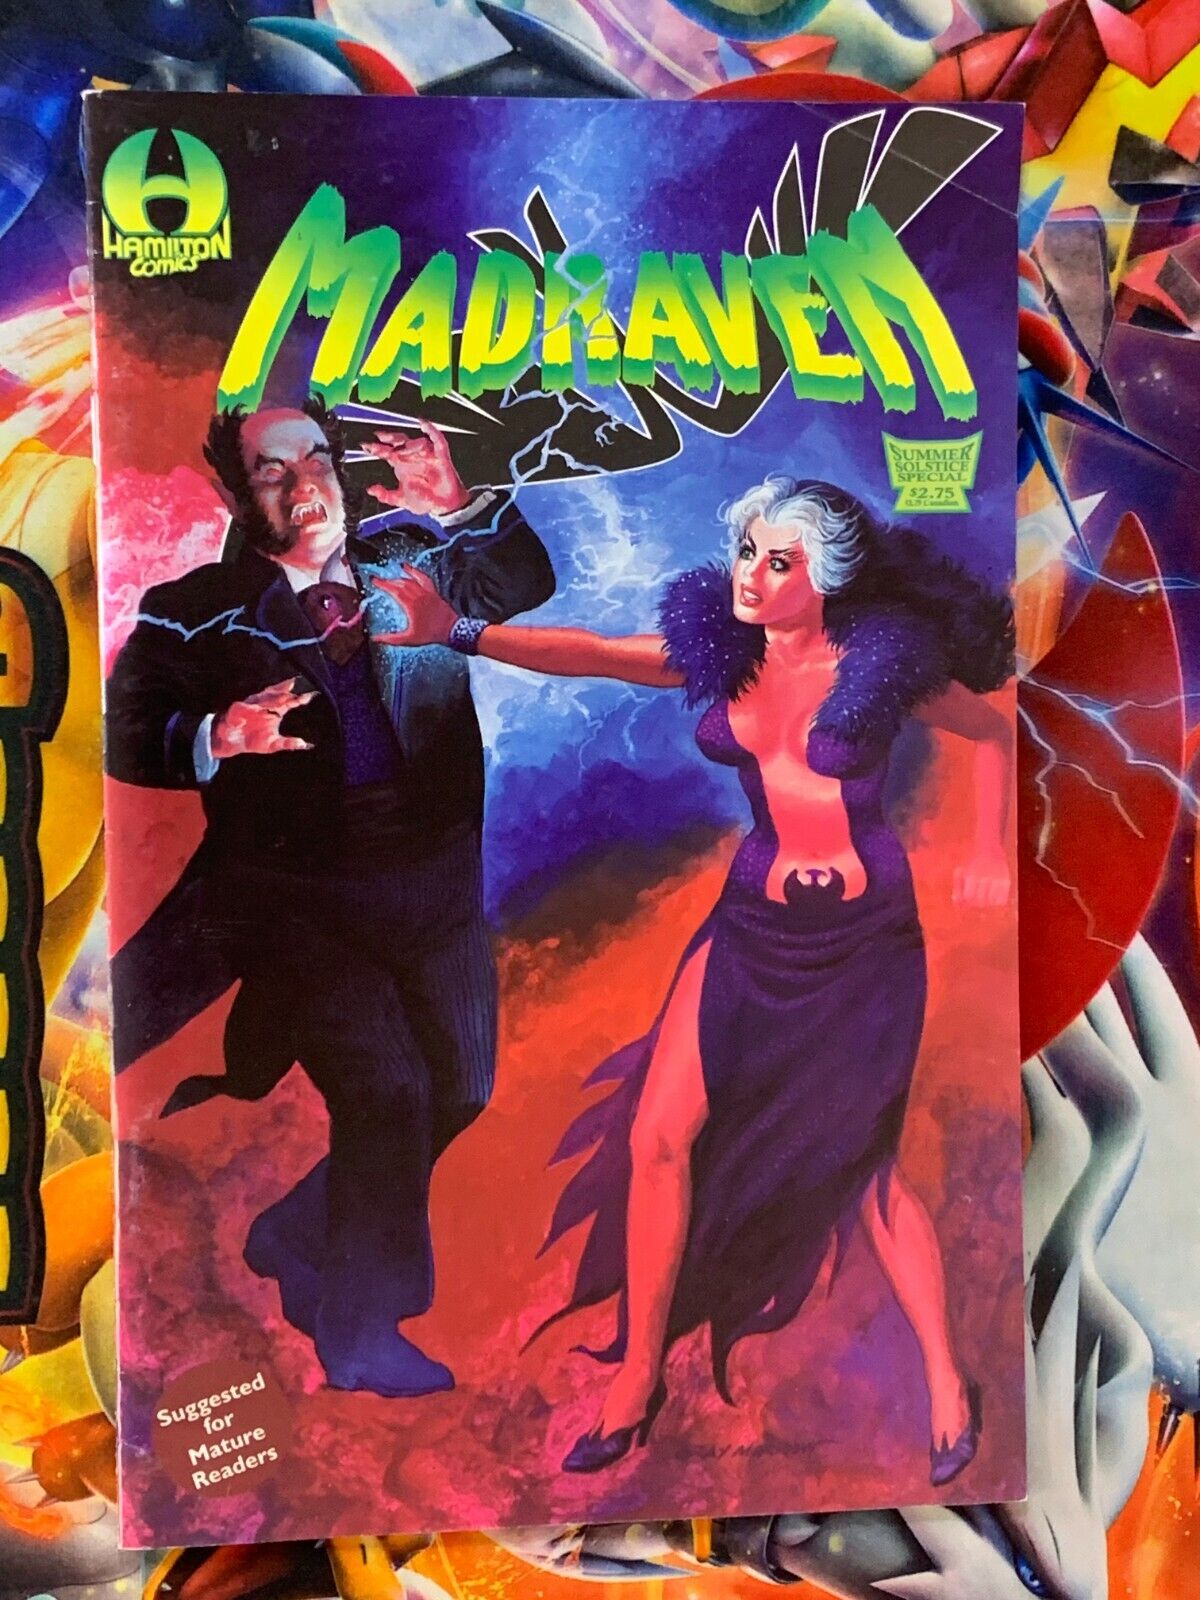 Madraven Summer Solstice Special #1 Hamilton Comics June 1996 